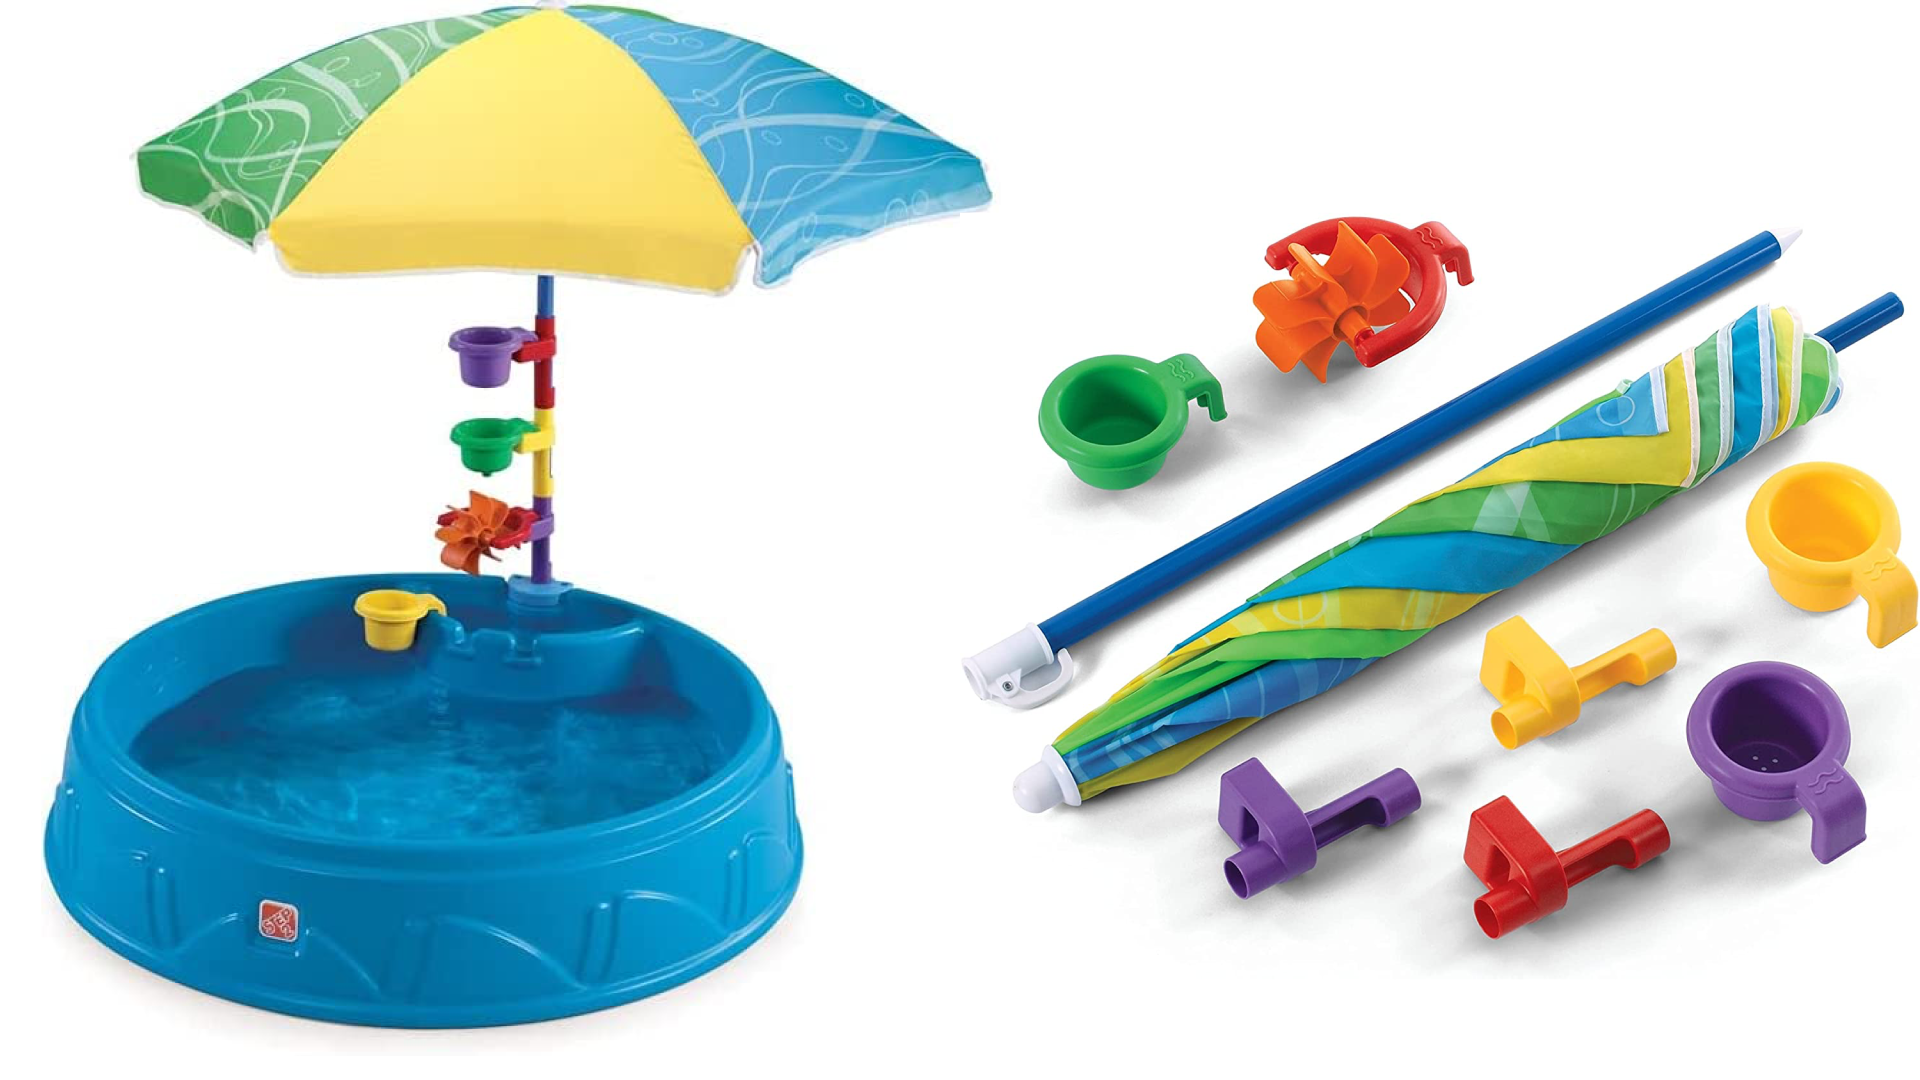 Plastic kiddie pool 